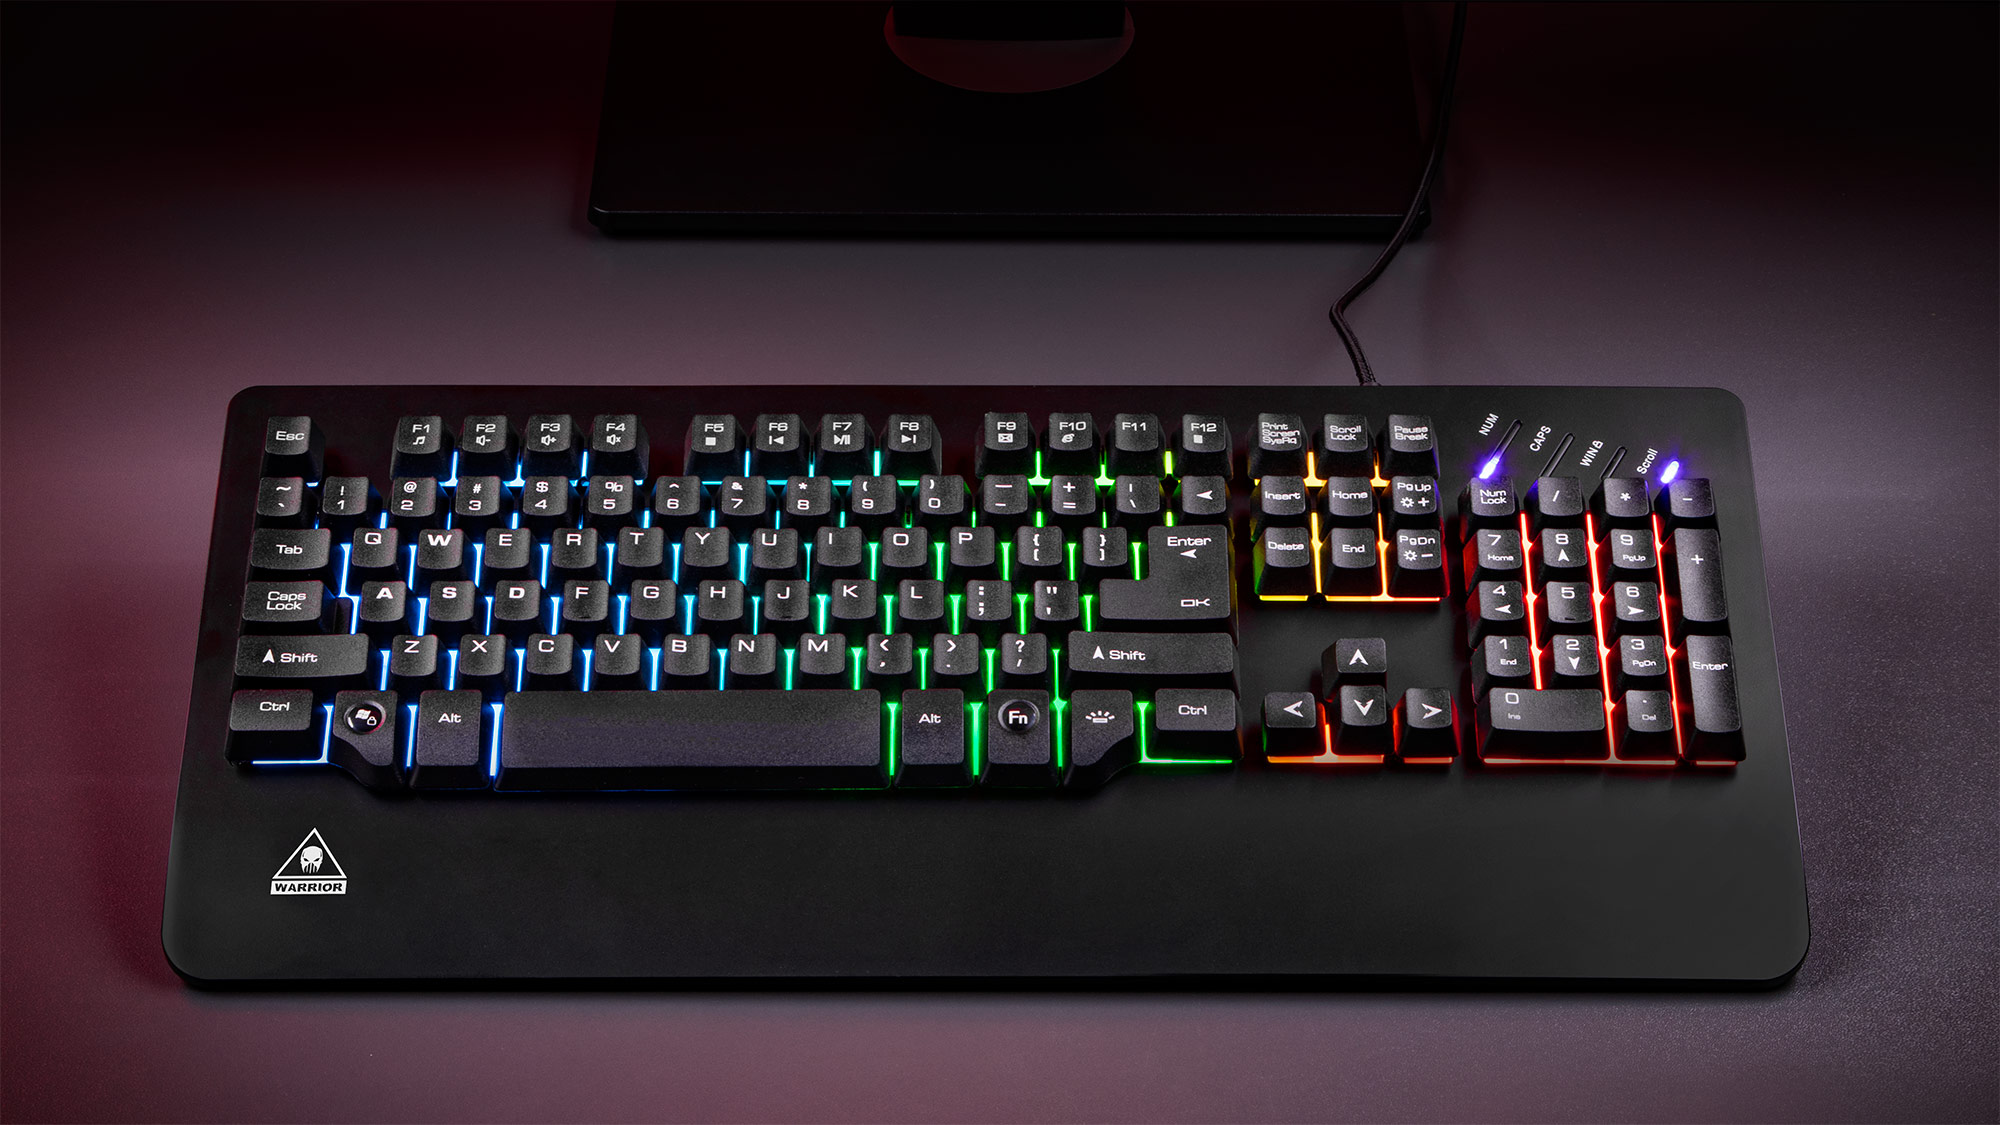 Iti place sa te joci noaptea? Iluminarea in mai multe culori a tastaturii Warrior GK50 de la Kruger&Matz face sesiunile de gaming o adevarat placere! In plus, tastatura are doua moduri de functionare - tu esti cel care decide pe care il vei folosi. 